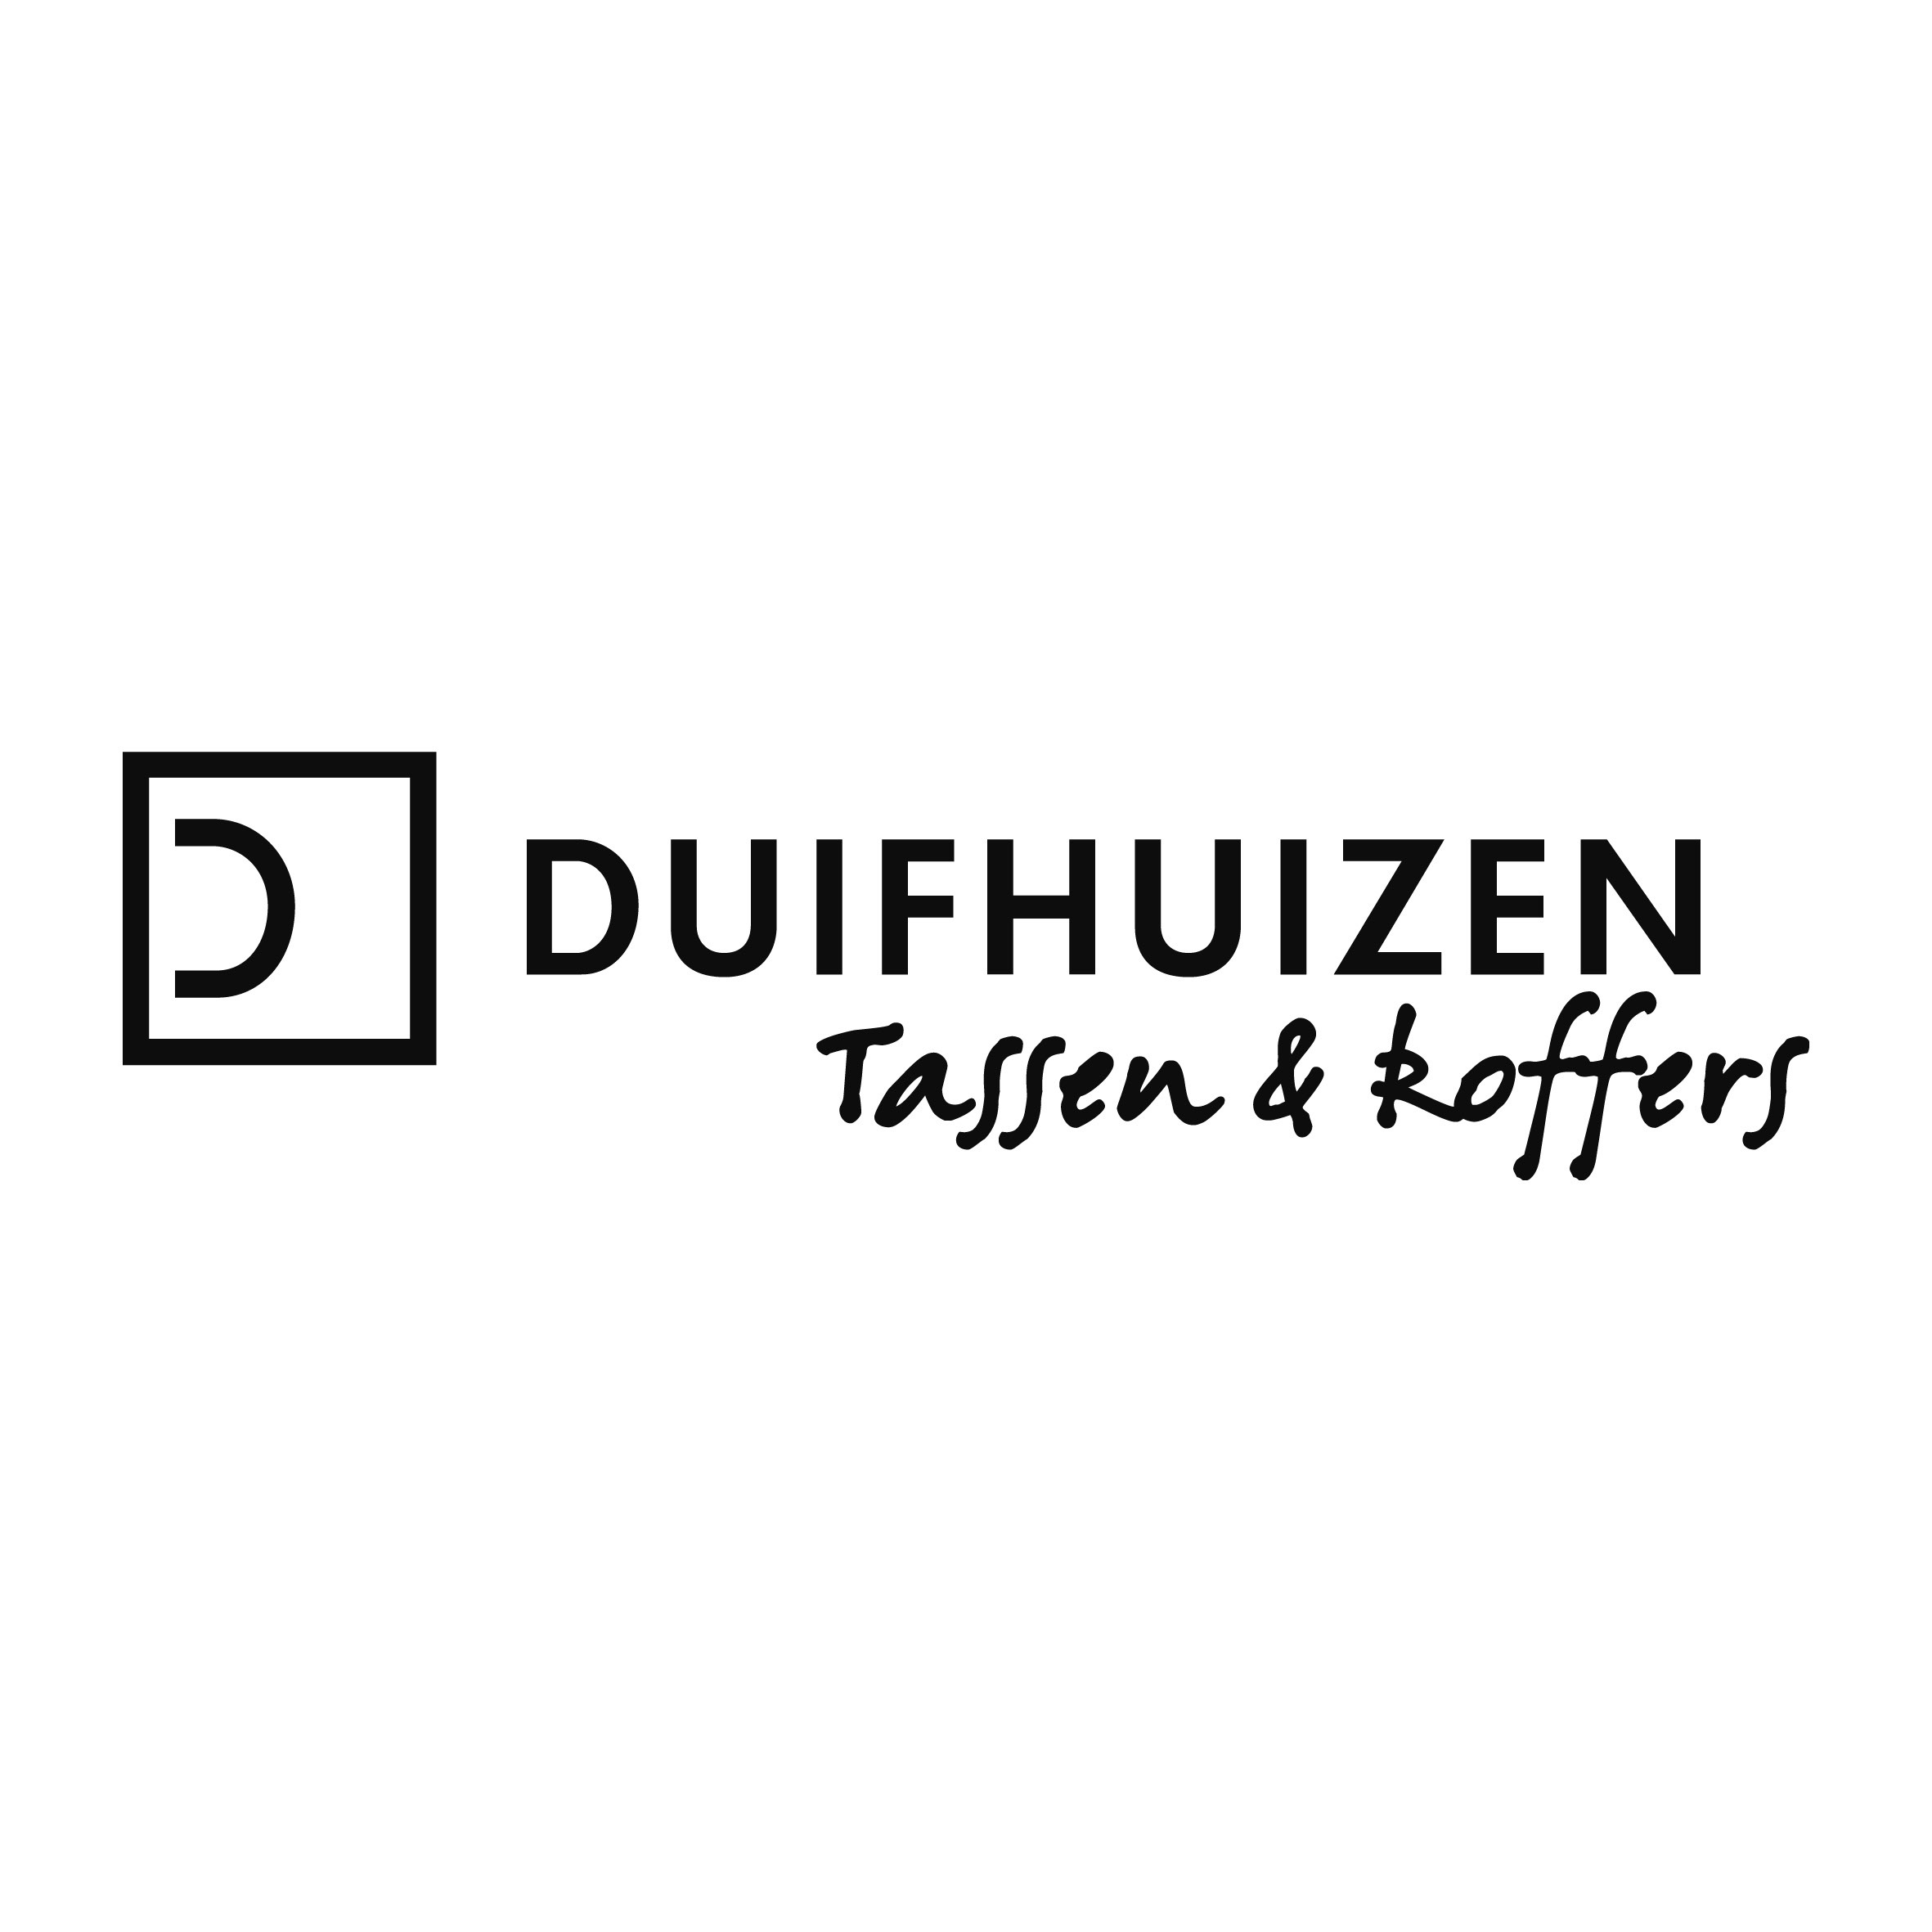 Kietelen esthetisch defect Reviews over Duifhuizen tassen en koffers - Opiness - Spreekt uit ervaring